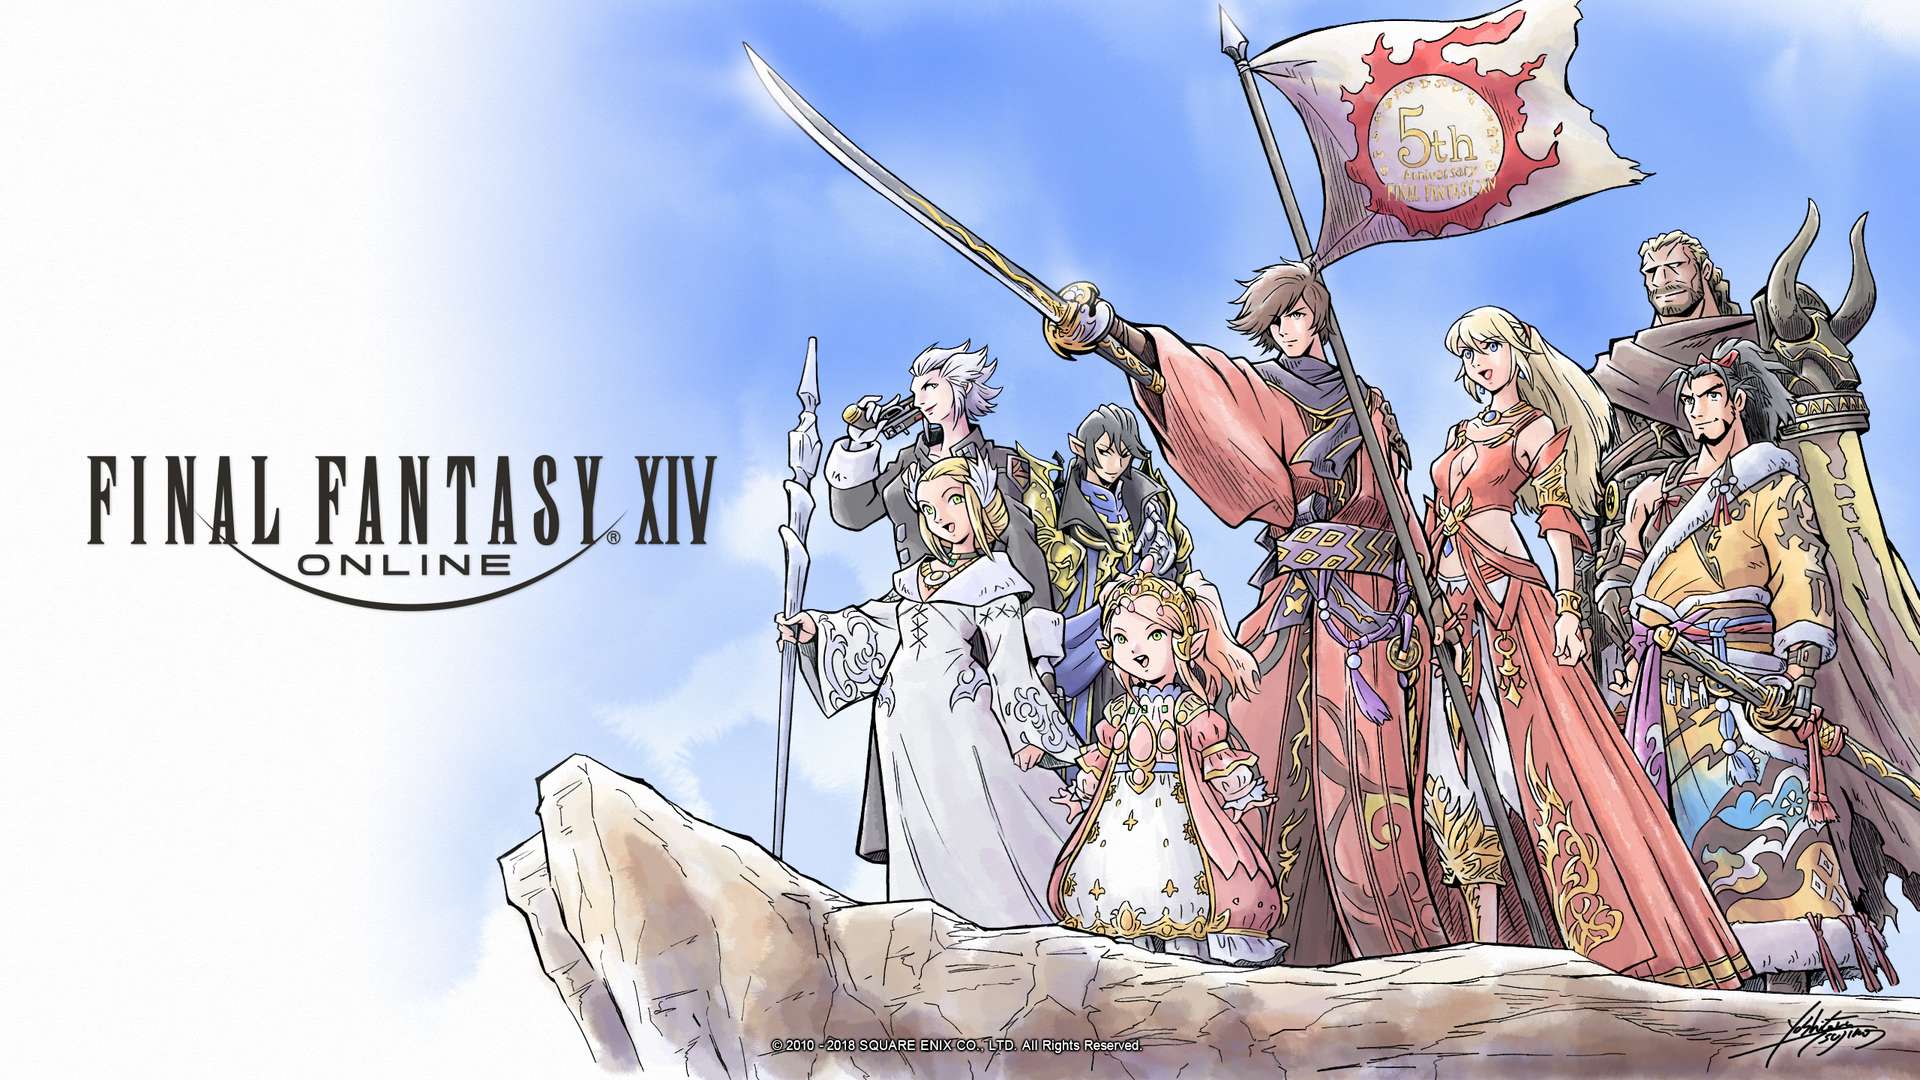 Final Fantasy XIV seguirá recibiendo contenido durante mucho tiempo